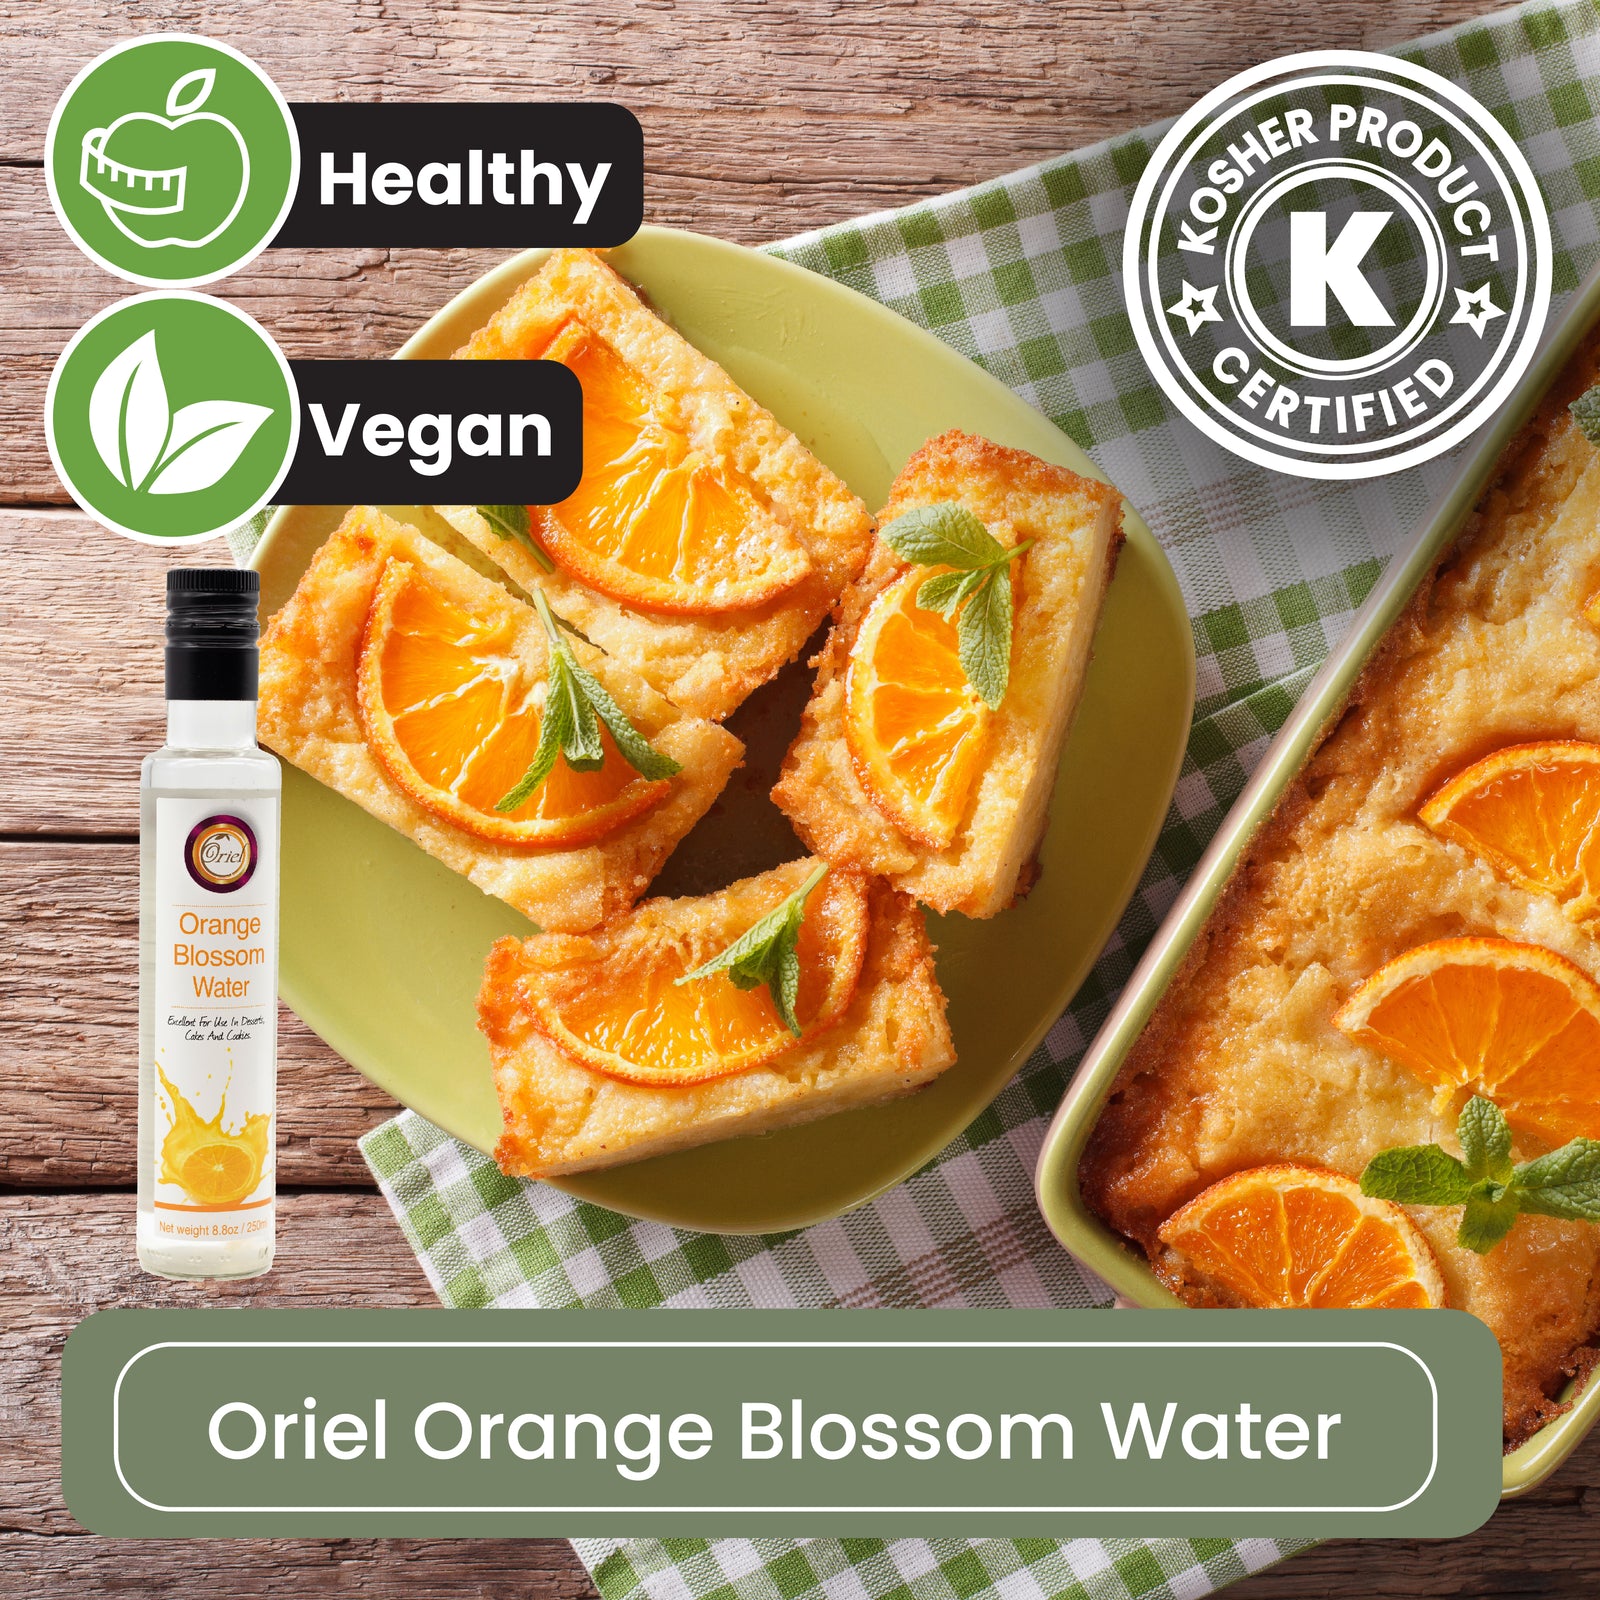 Oriel Orange Blossom Water